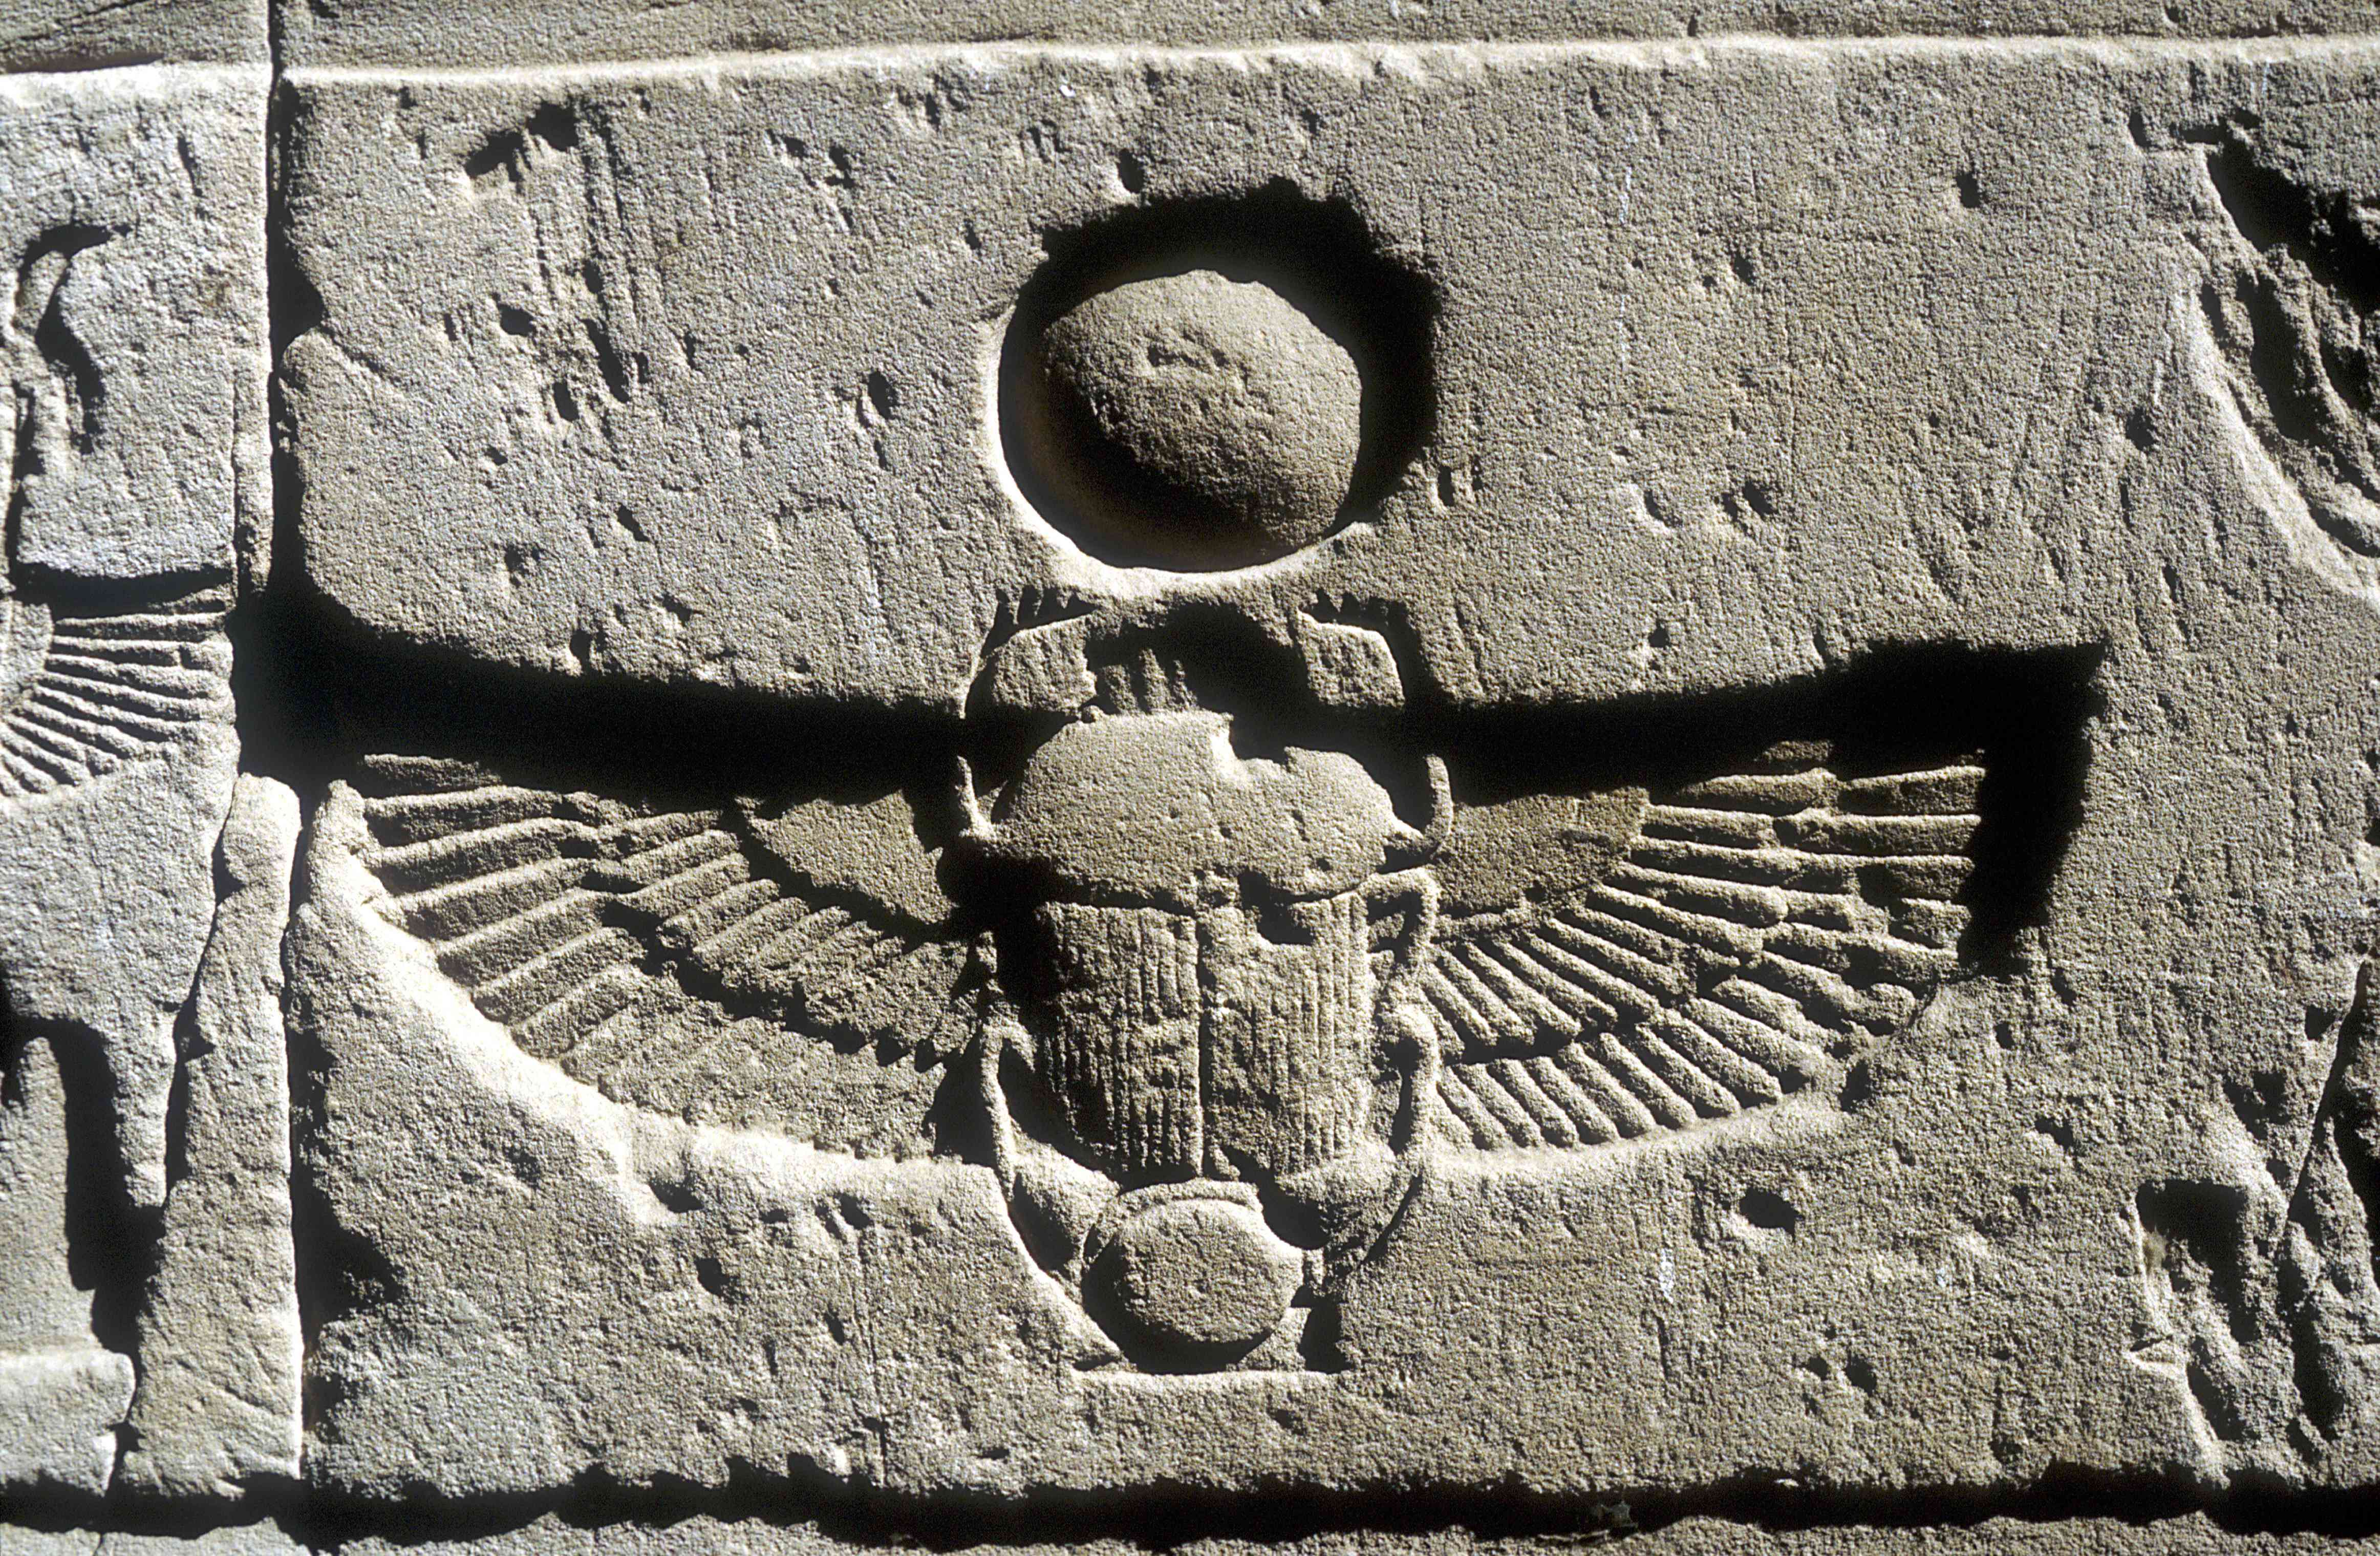 埃及Edfu，在太阳圆盘下刻有圣甲虫和秃鹫翅膀的石灰岩浮雕。